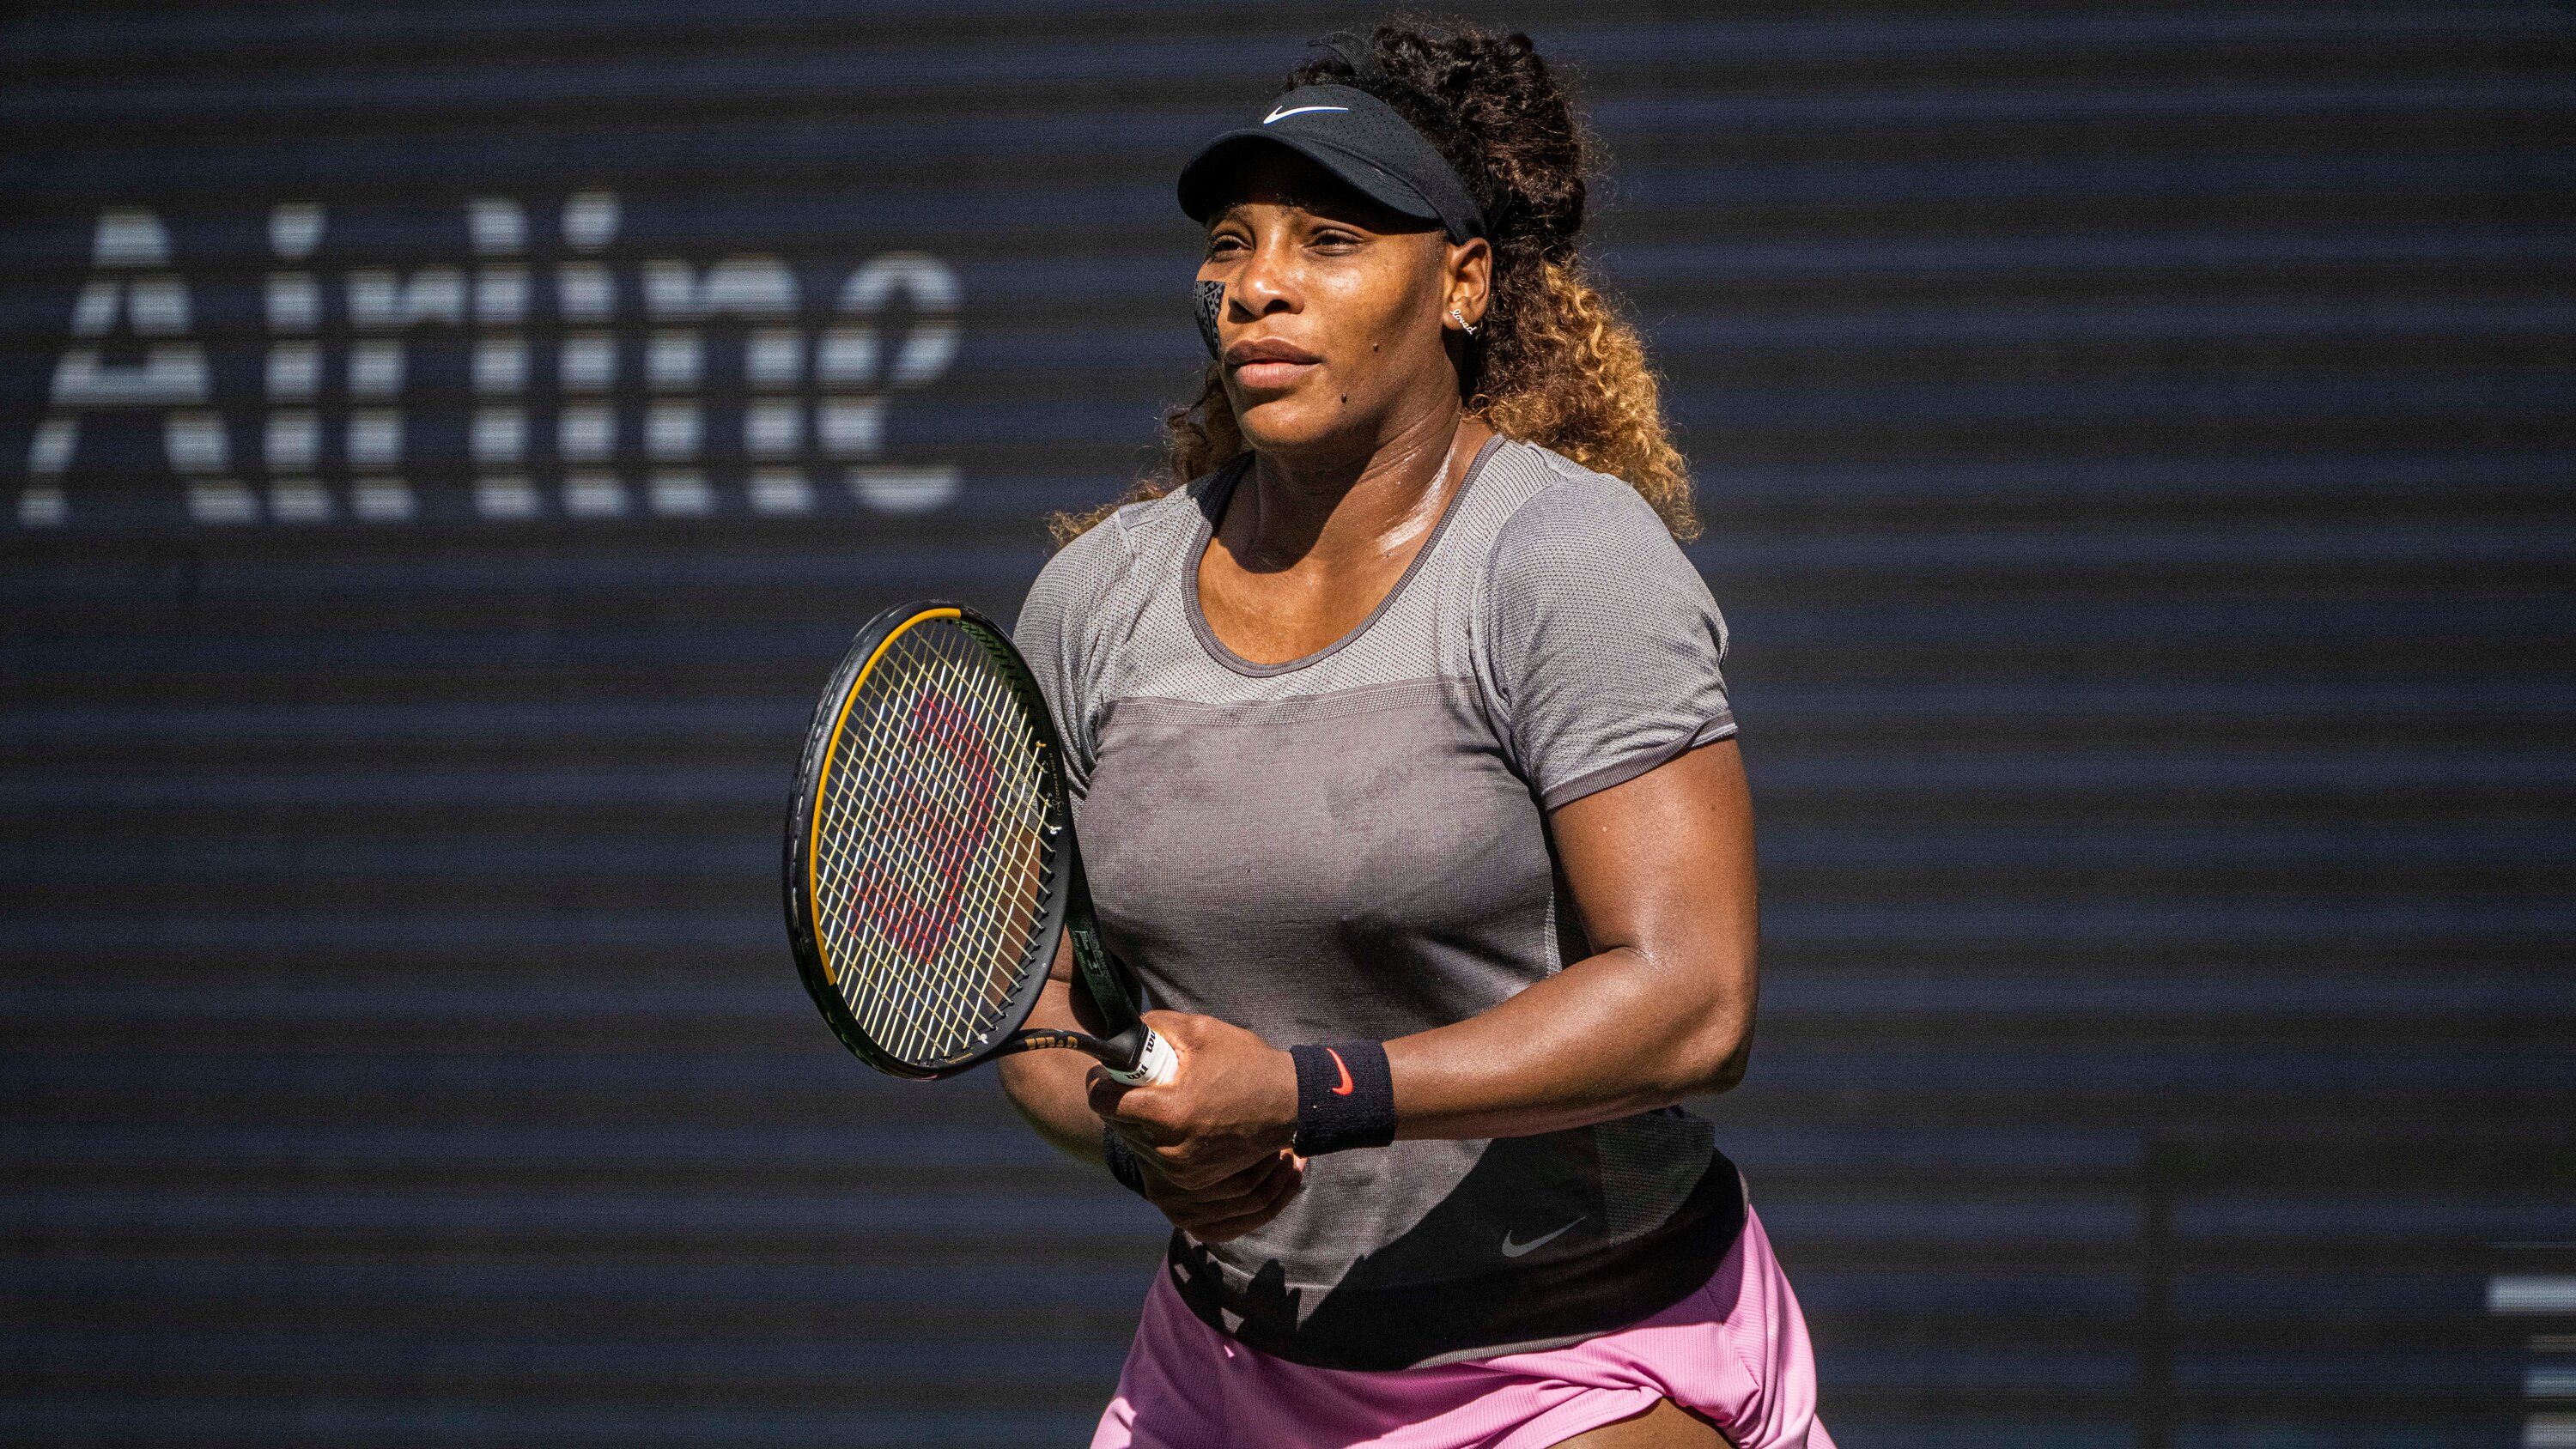 Danka Kovinic vs. Serena Williams Prediction, Betting Tips & Odds │30 AUGUST, 2022